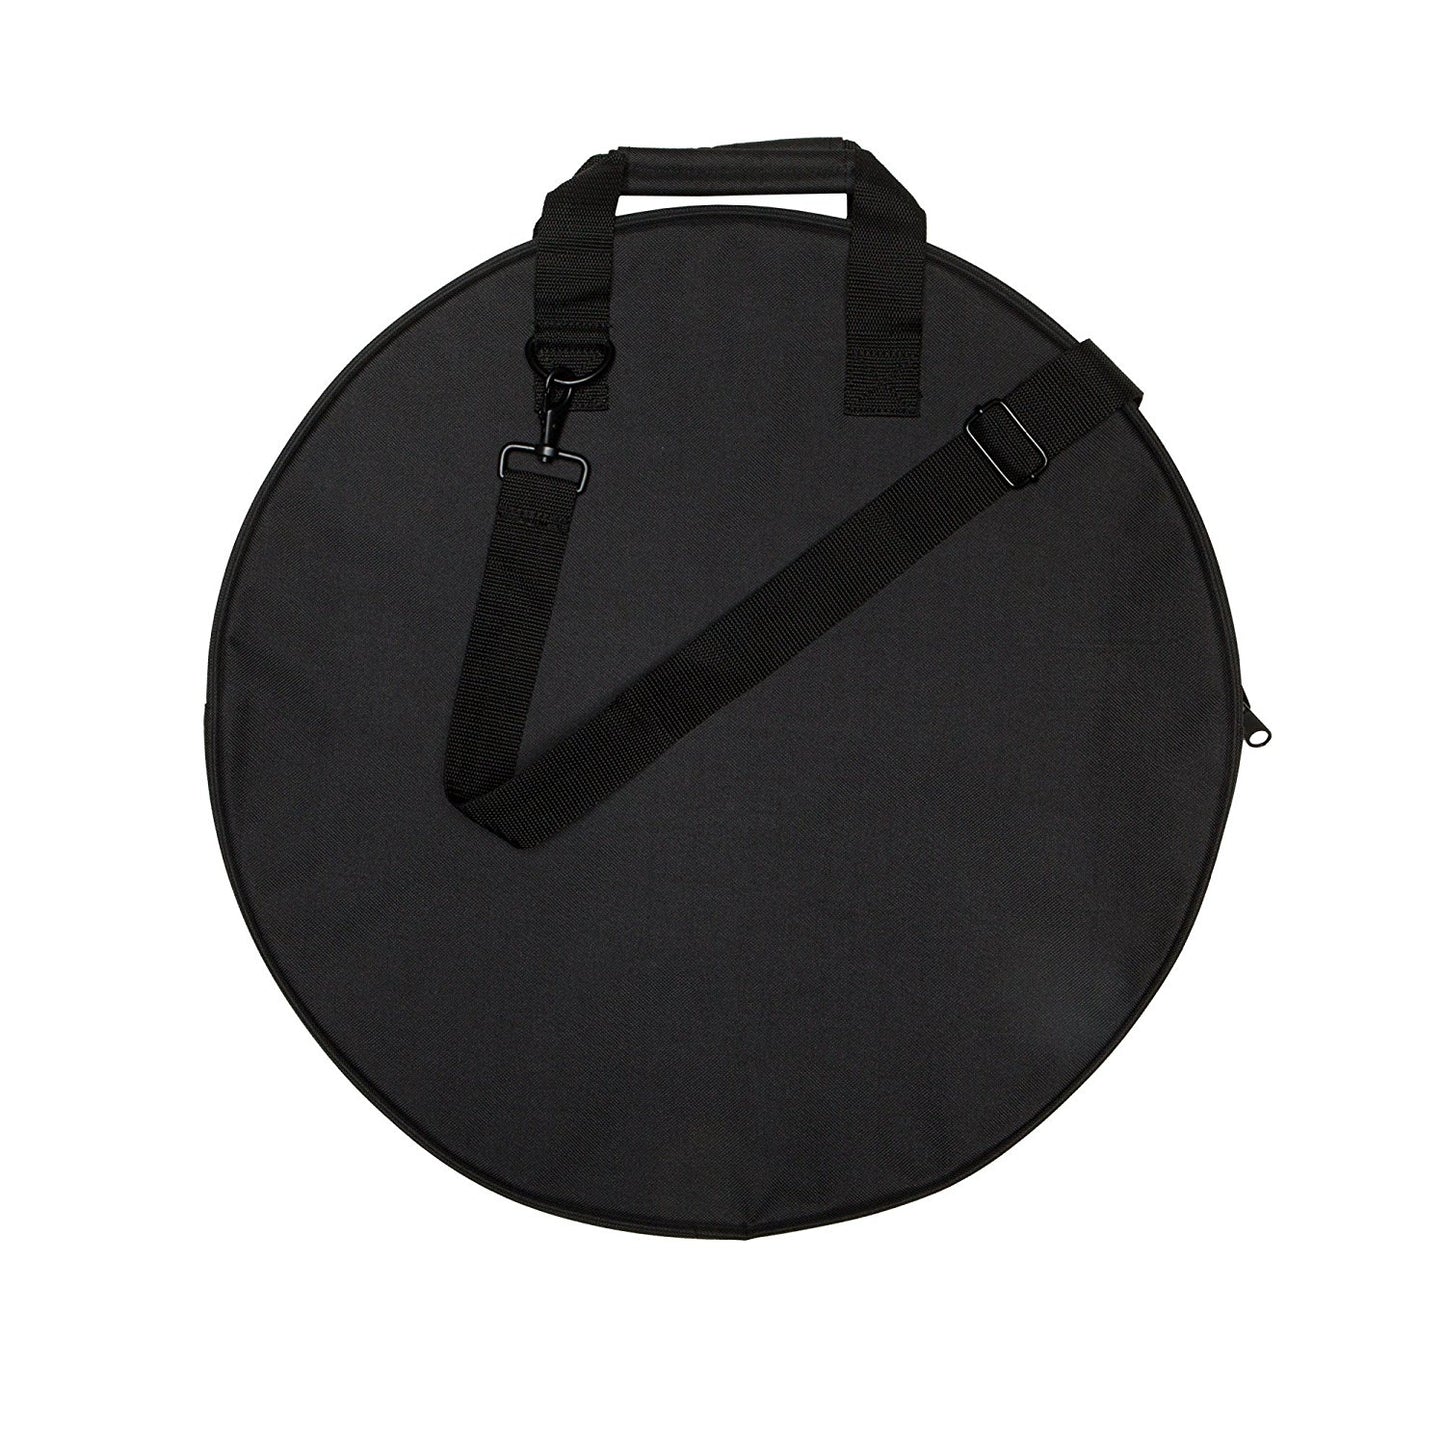 Zildjian 20" Basic Cymbal Bag